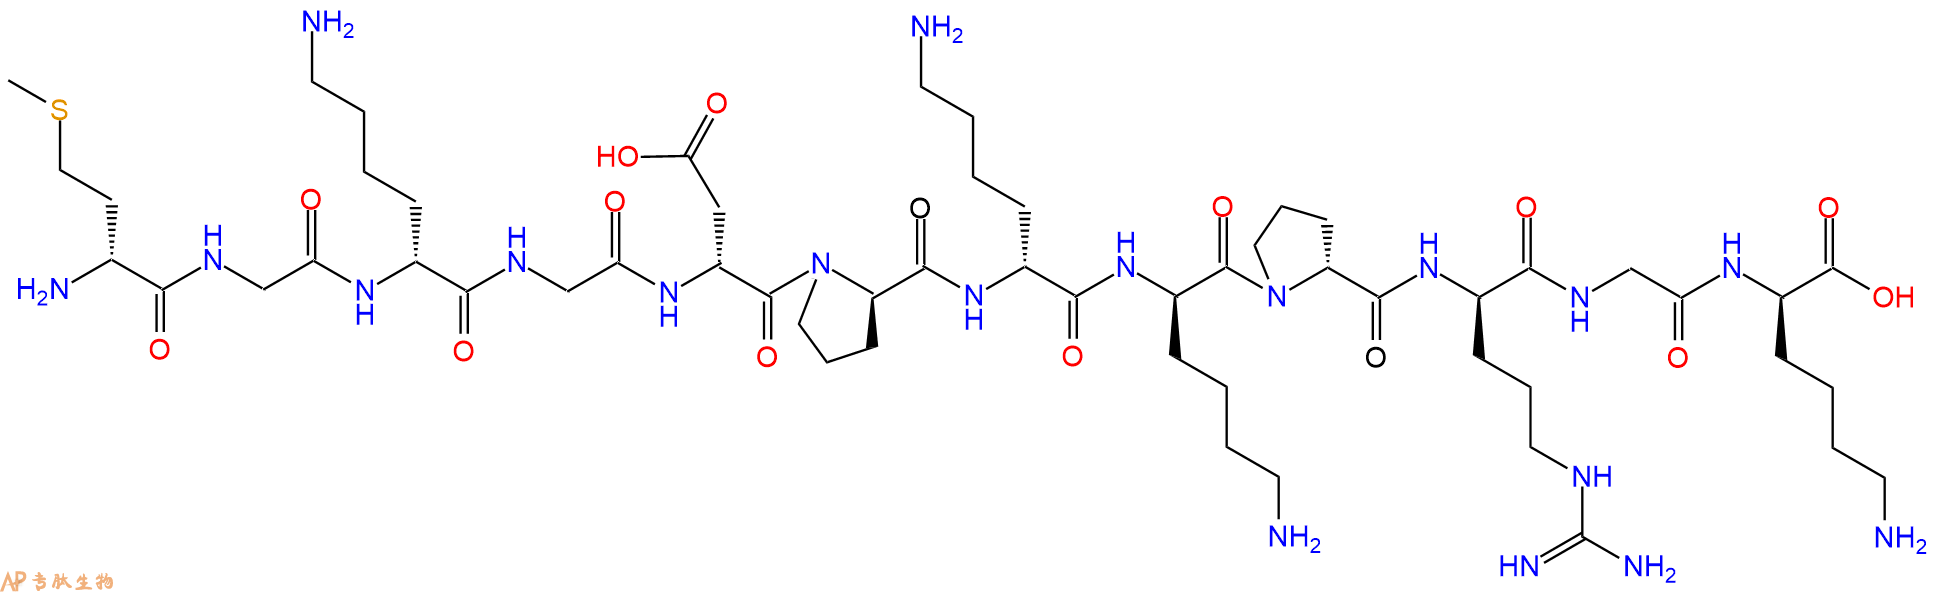 专肽生物产品H2N-DMet-Gly-DLys-Gly-DAsp-DPro-DLys-DLys-DPro-DAr